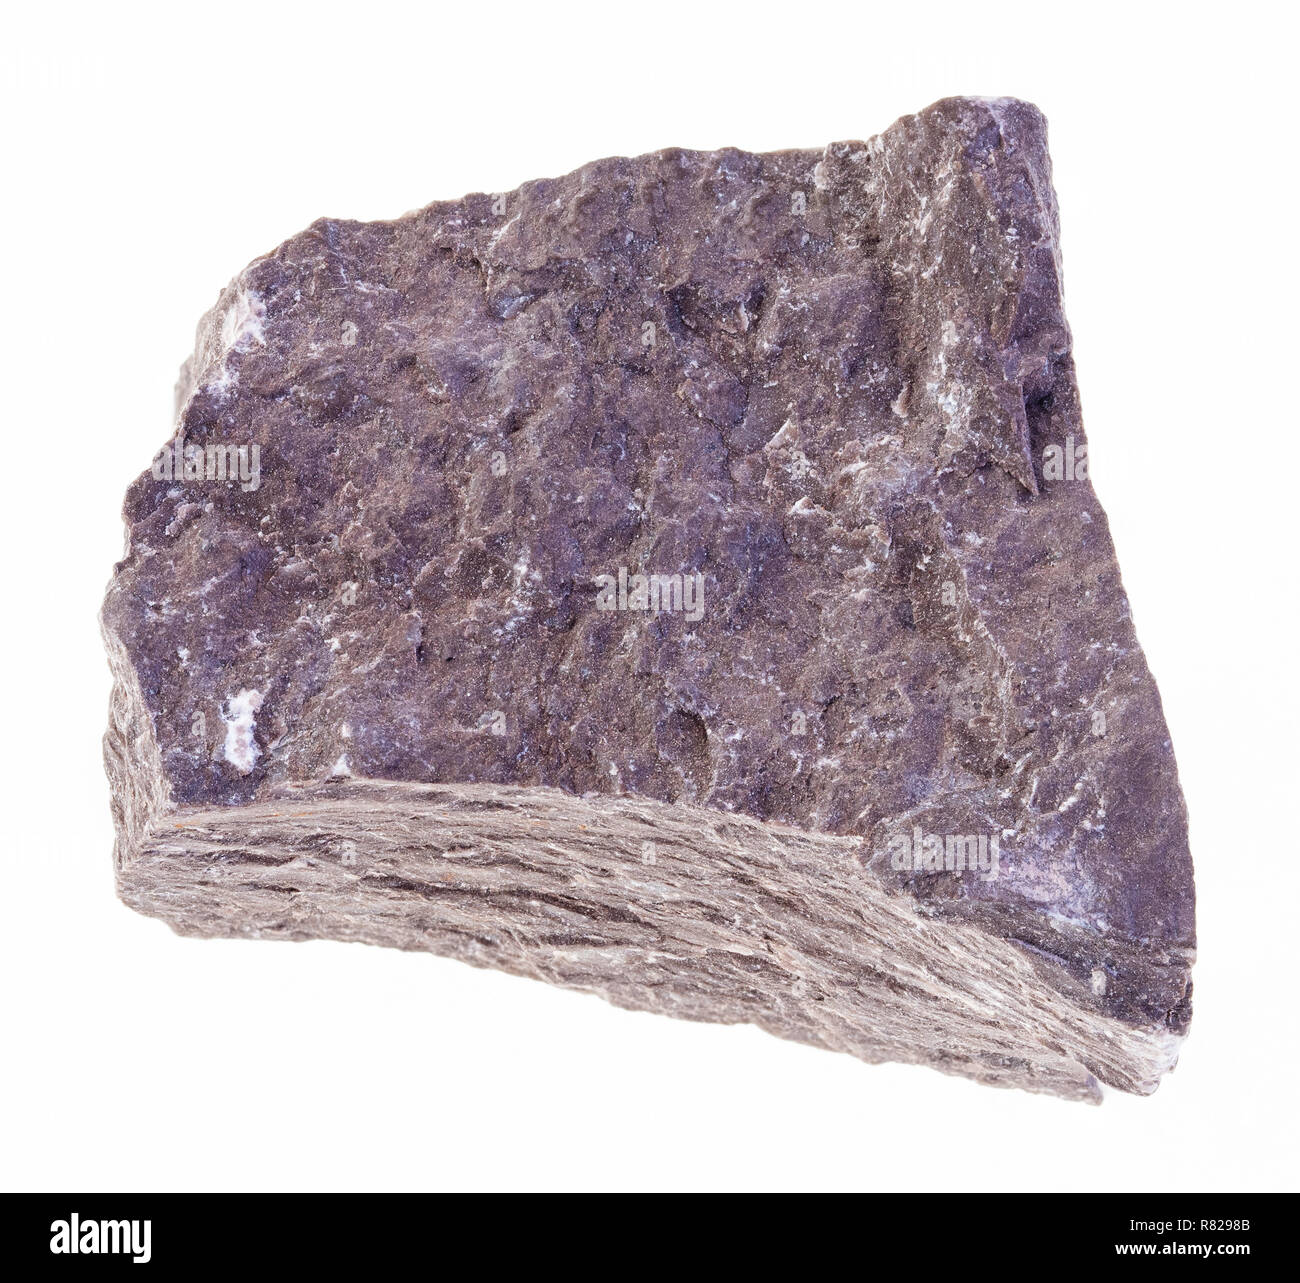 Makrofotografie von natürlichen Mineral aus geologische Sammlung - grobe Siltstone (aleurolite) Stein auf weißem Hintergrund Stockfoto